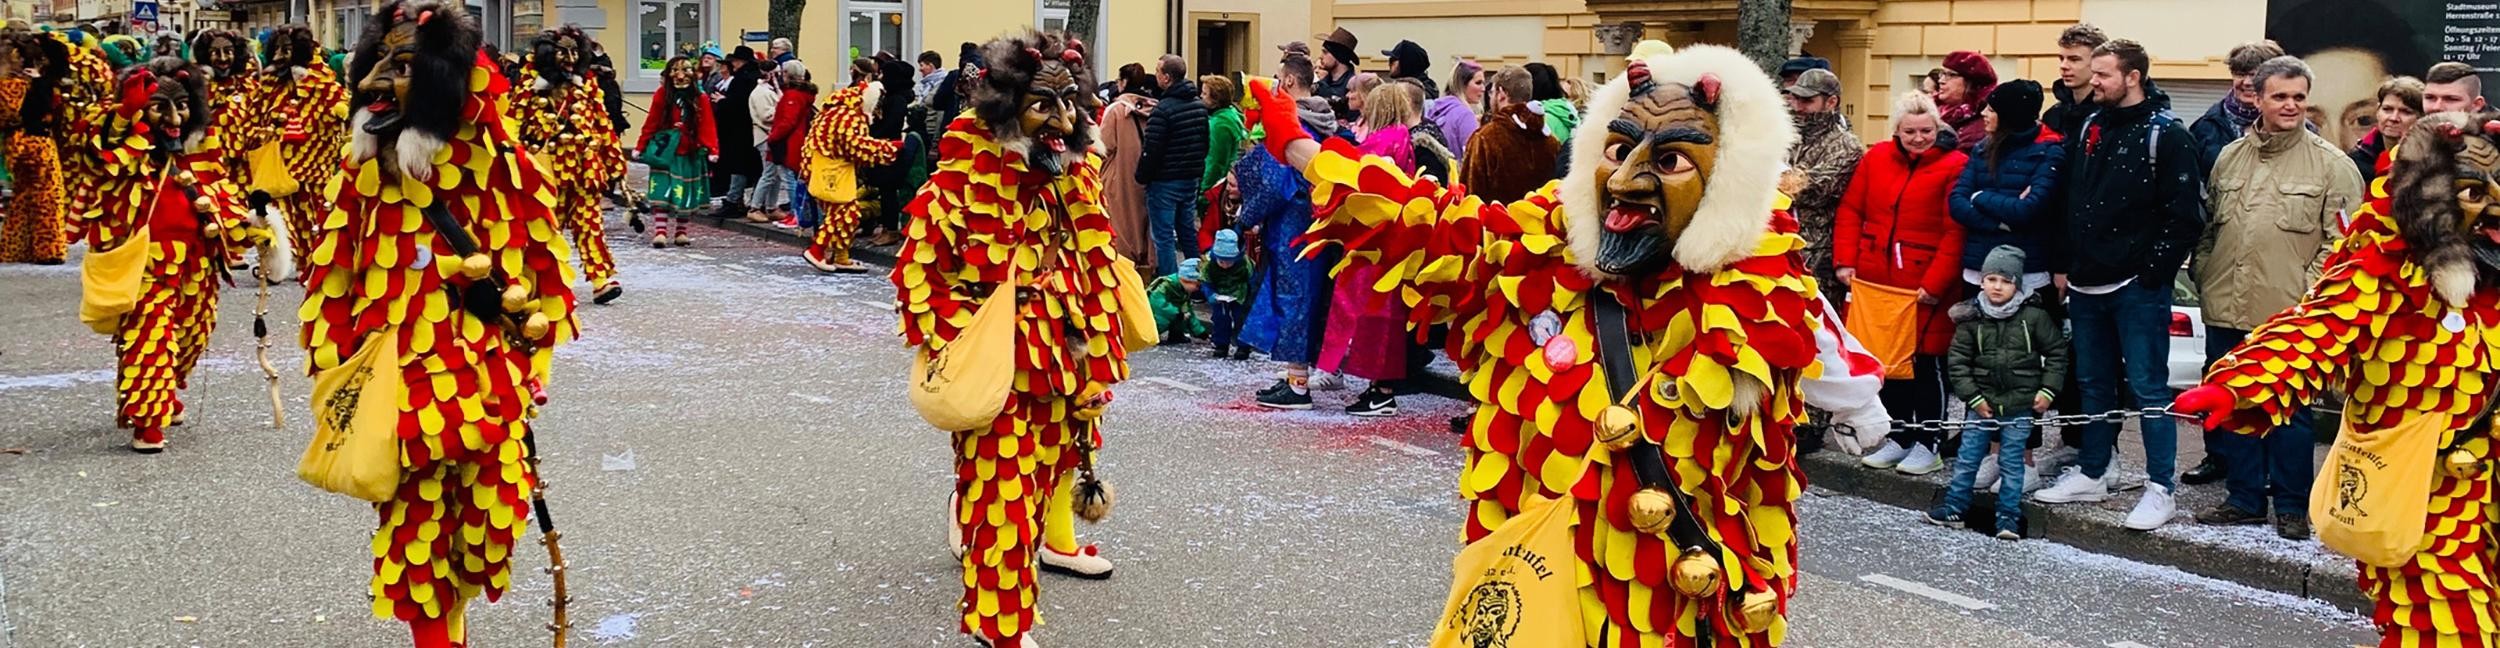 Carnival parade in Rastatt